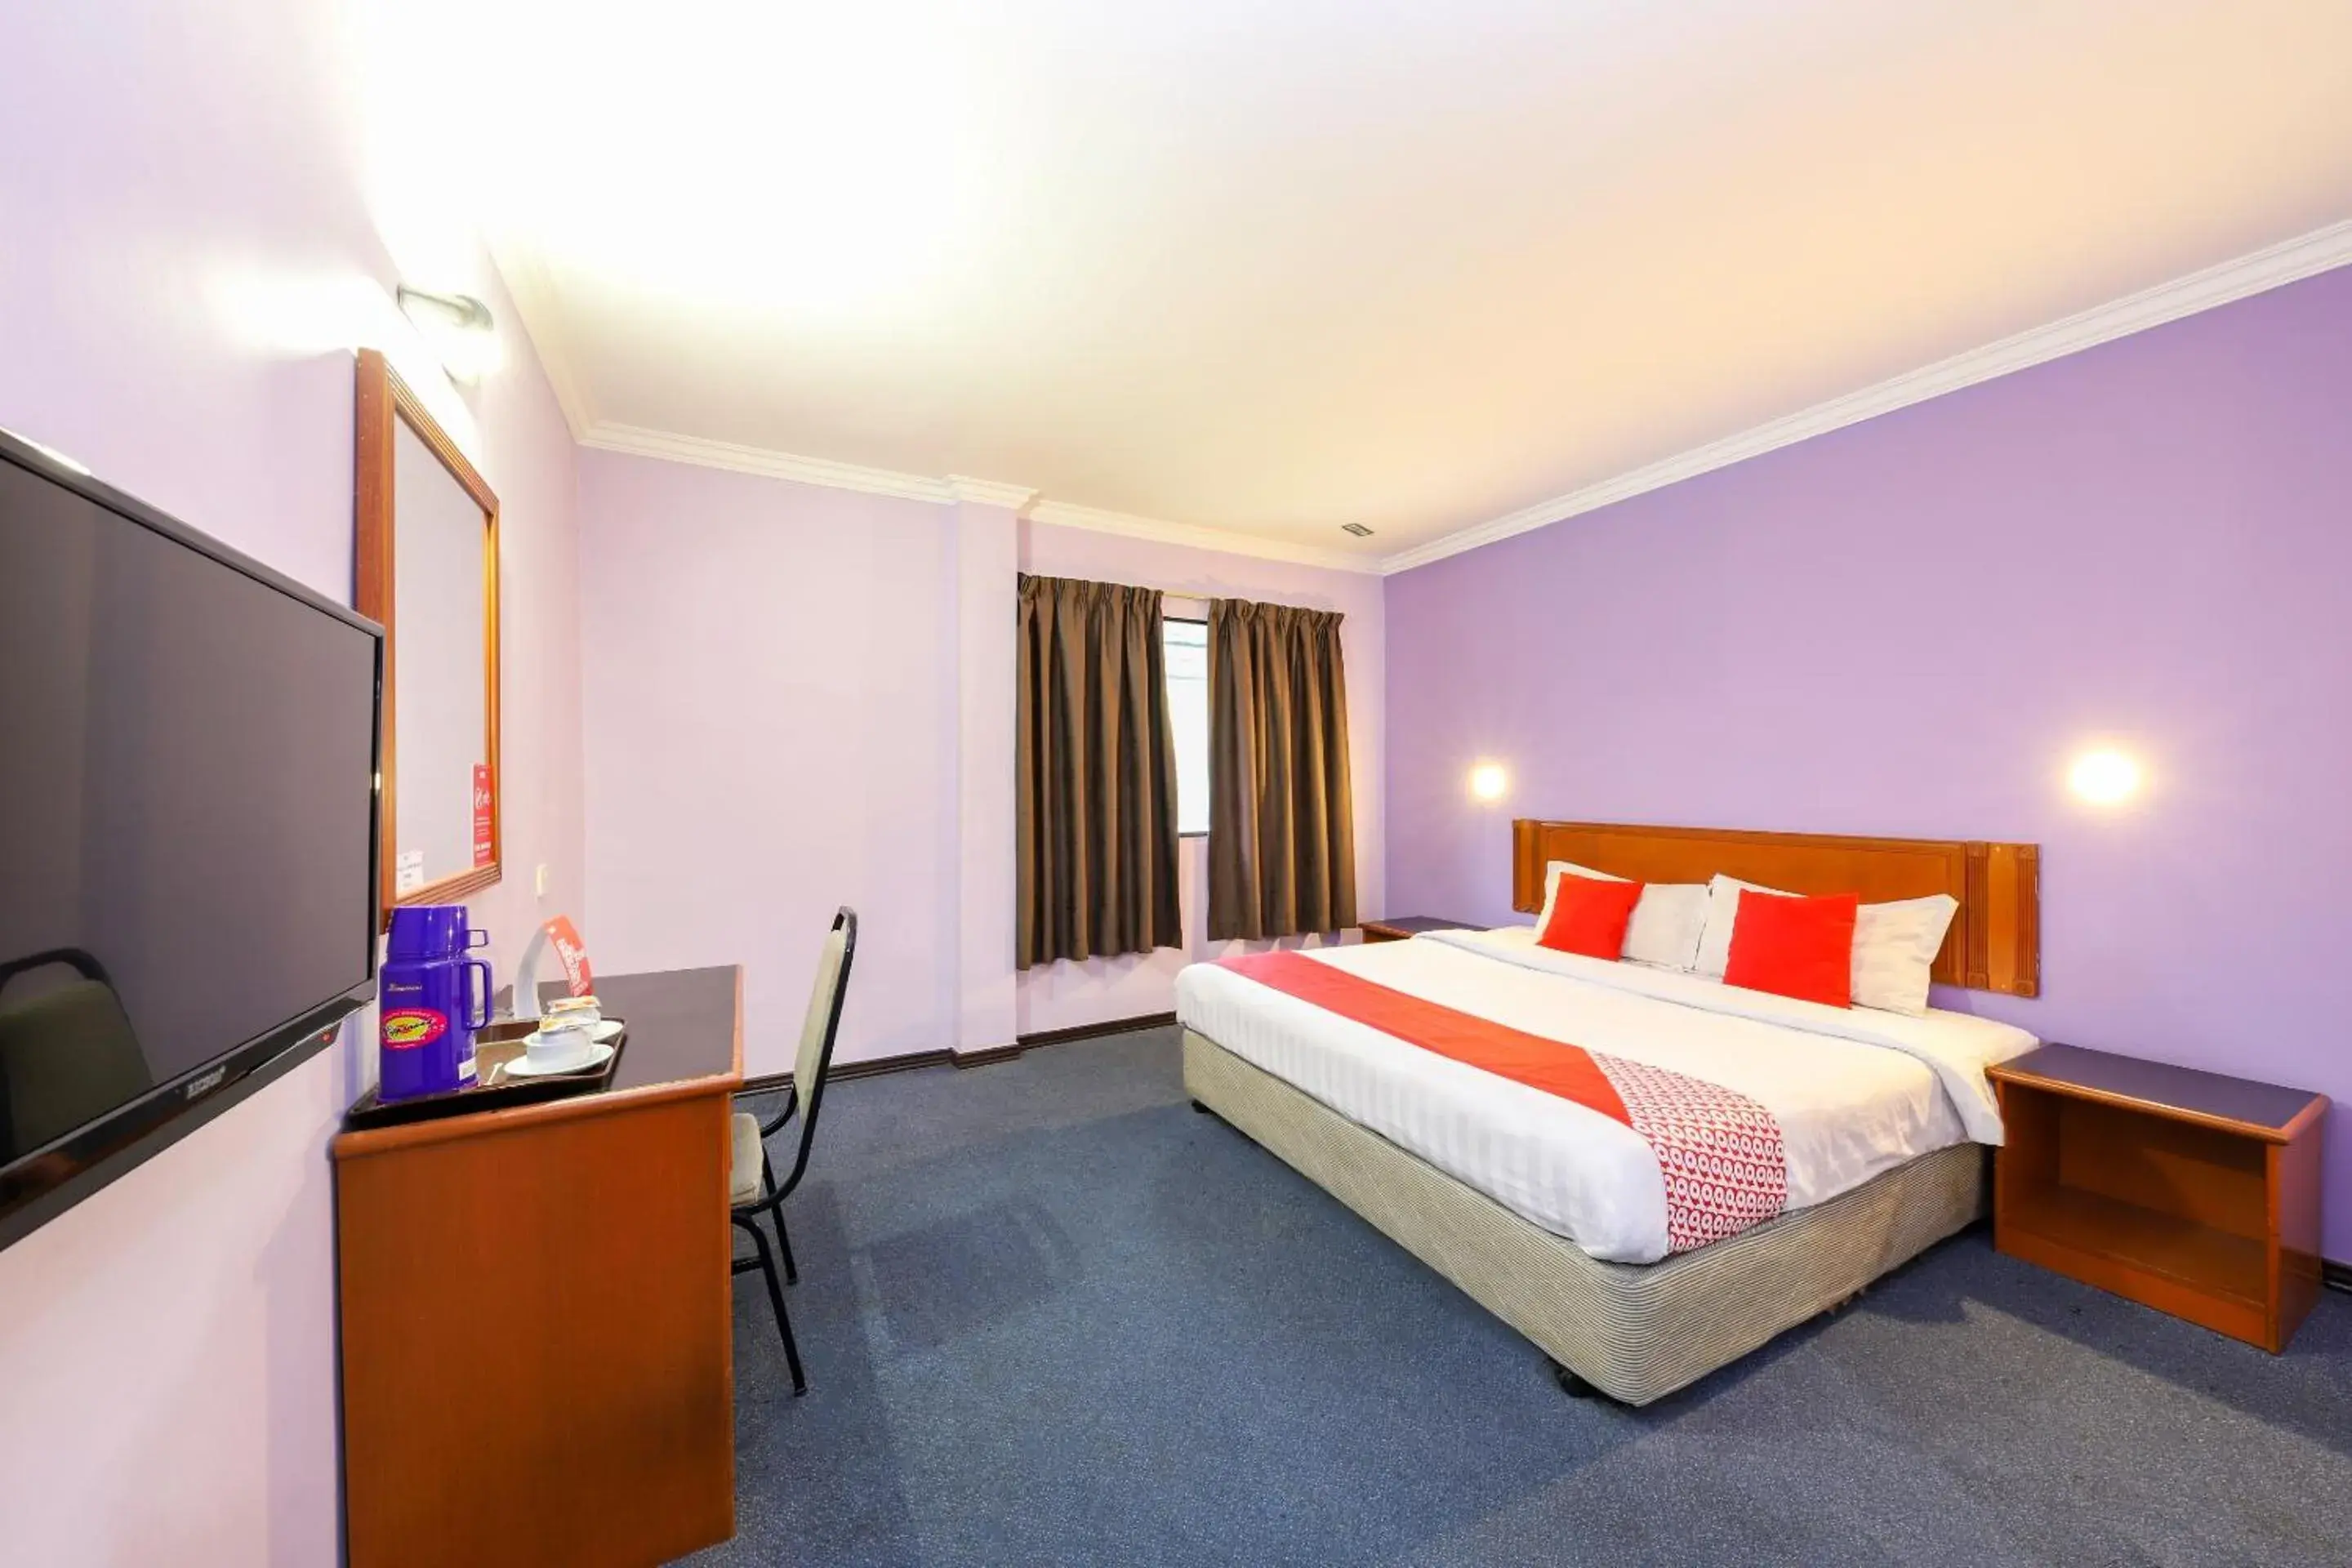 Bedroom, TV/Entertainment Center in OYO 472 Comfort Hotel 1